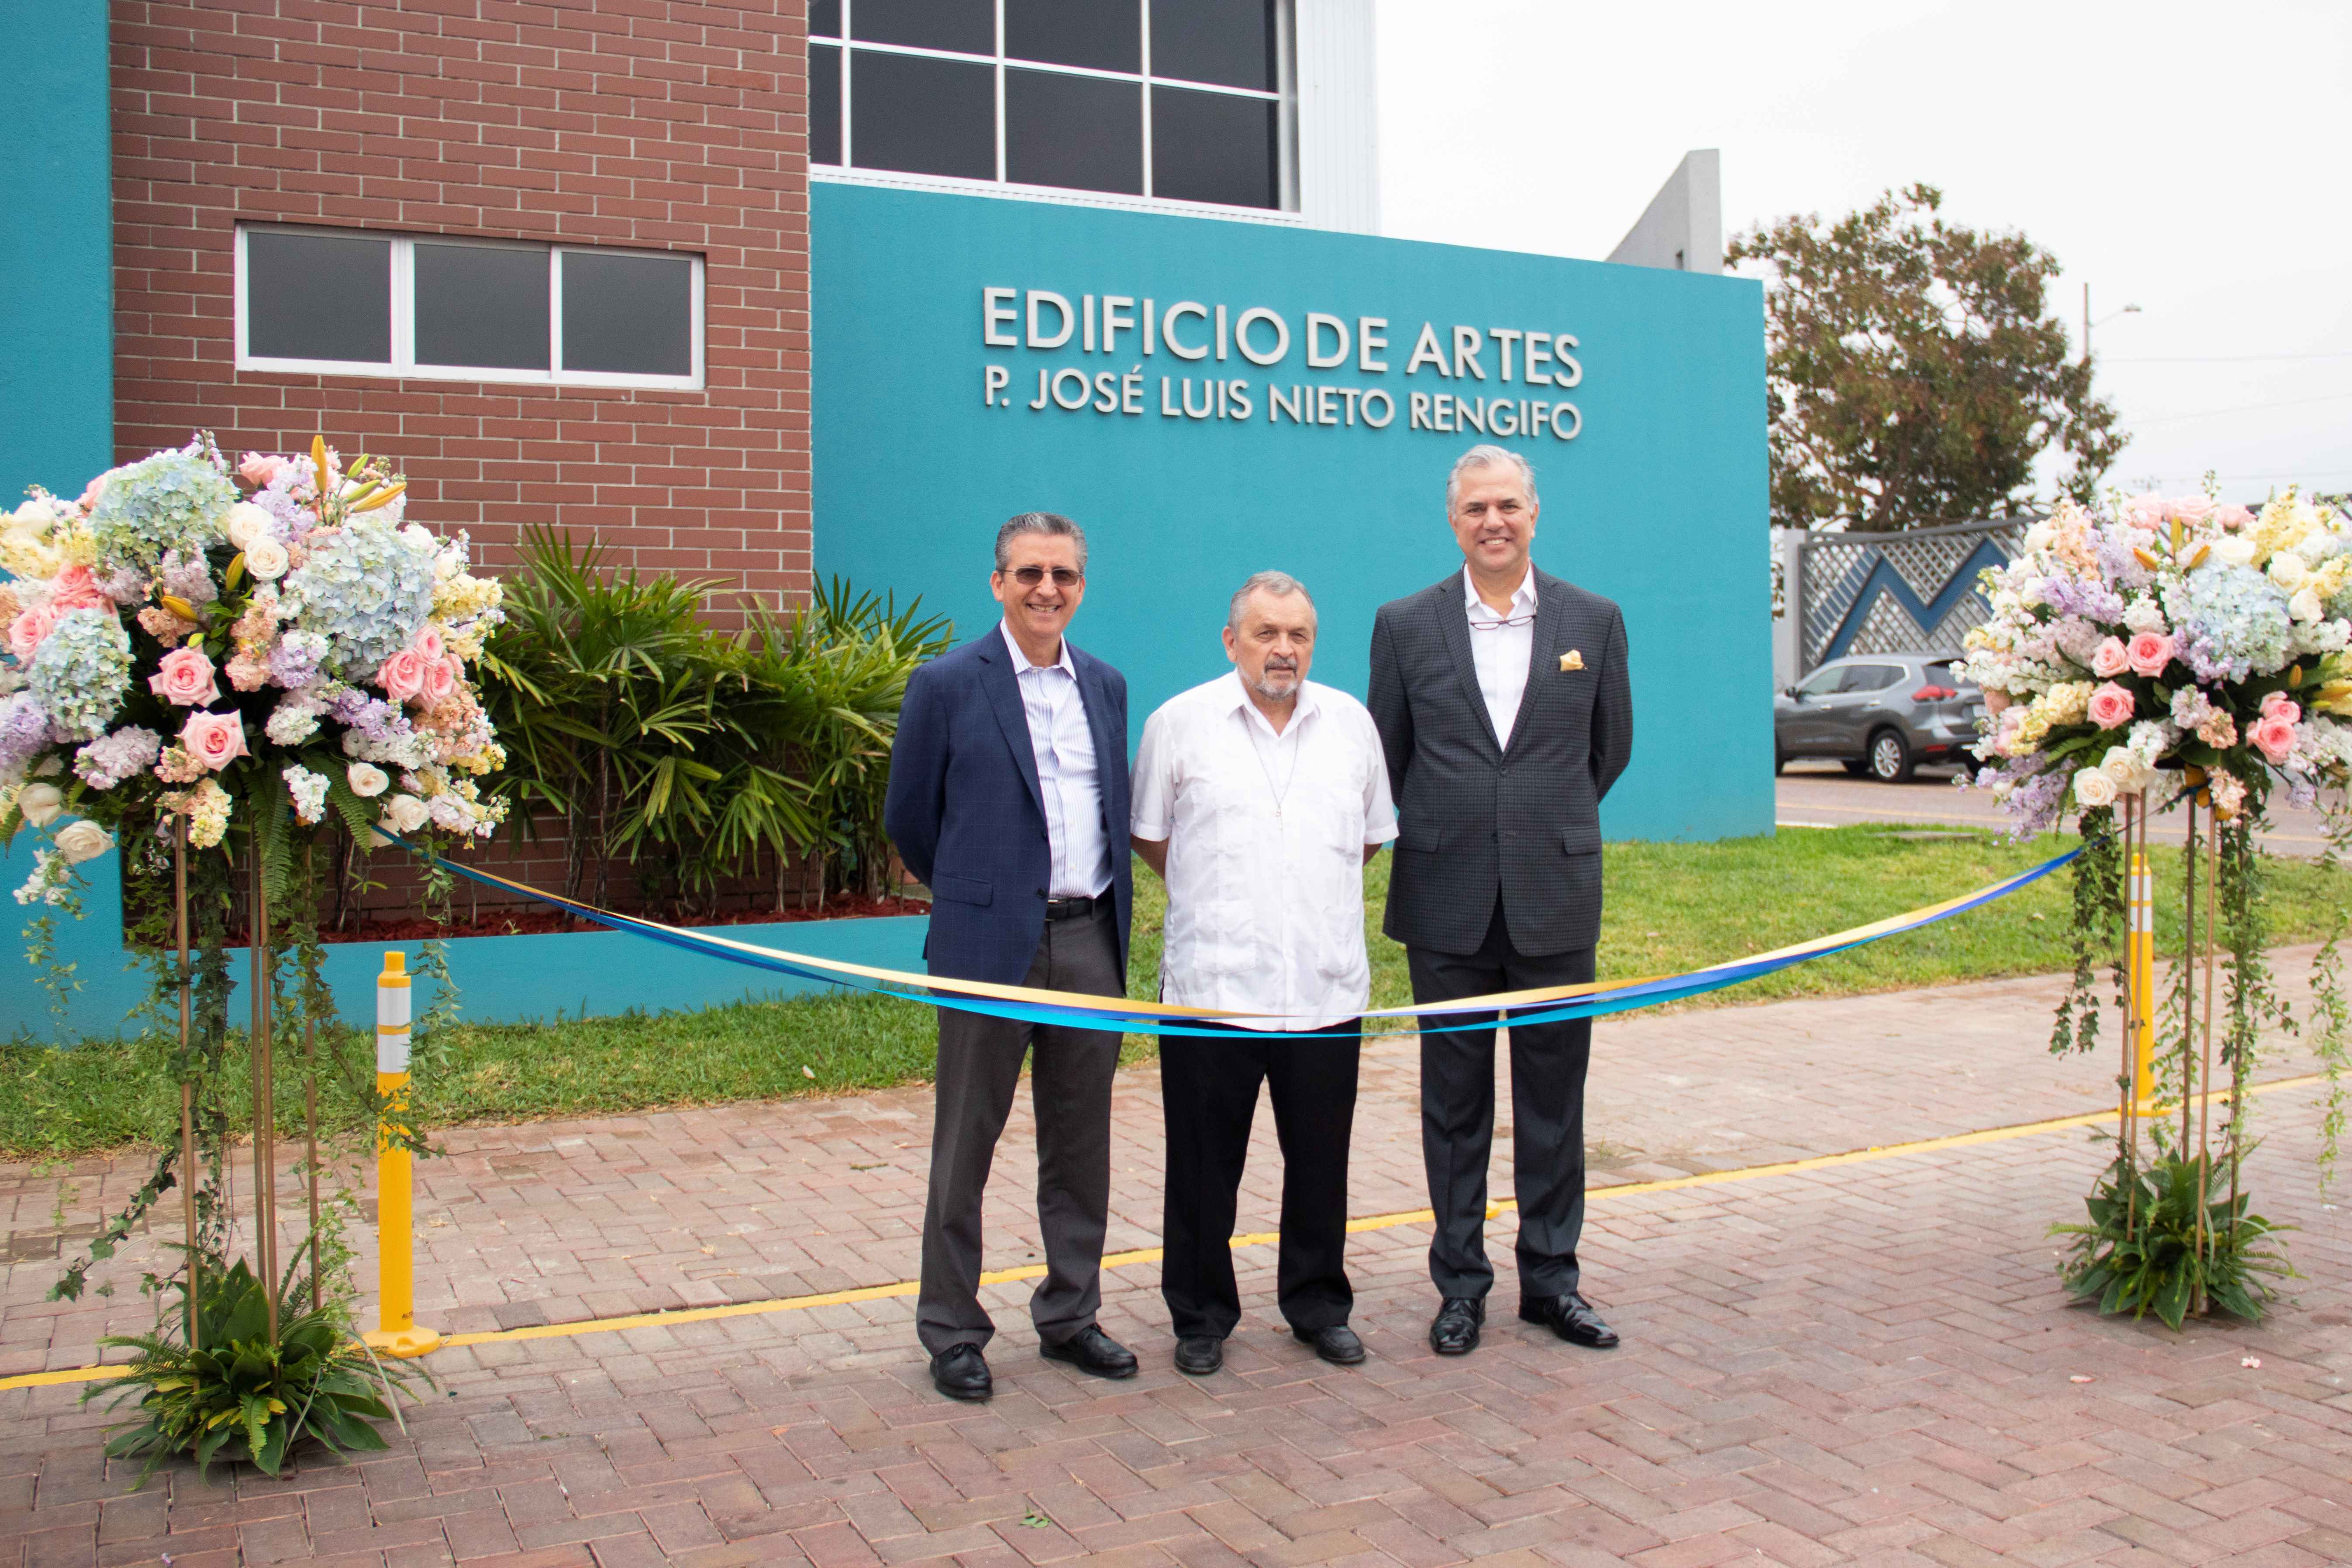 Monte Tabor-Nazaret inauguró Edificio de Artes P. José Luis Nieto Rengifo